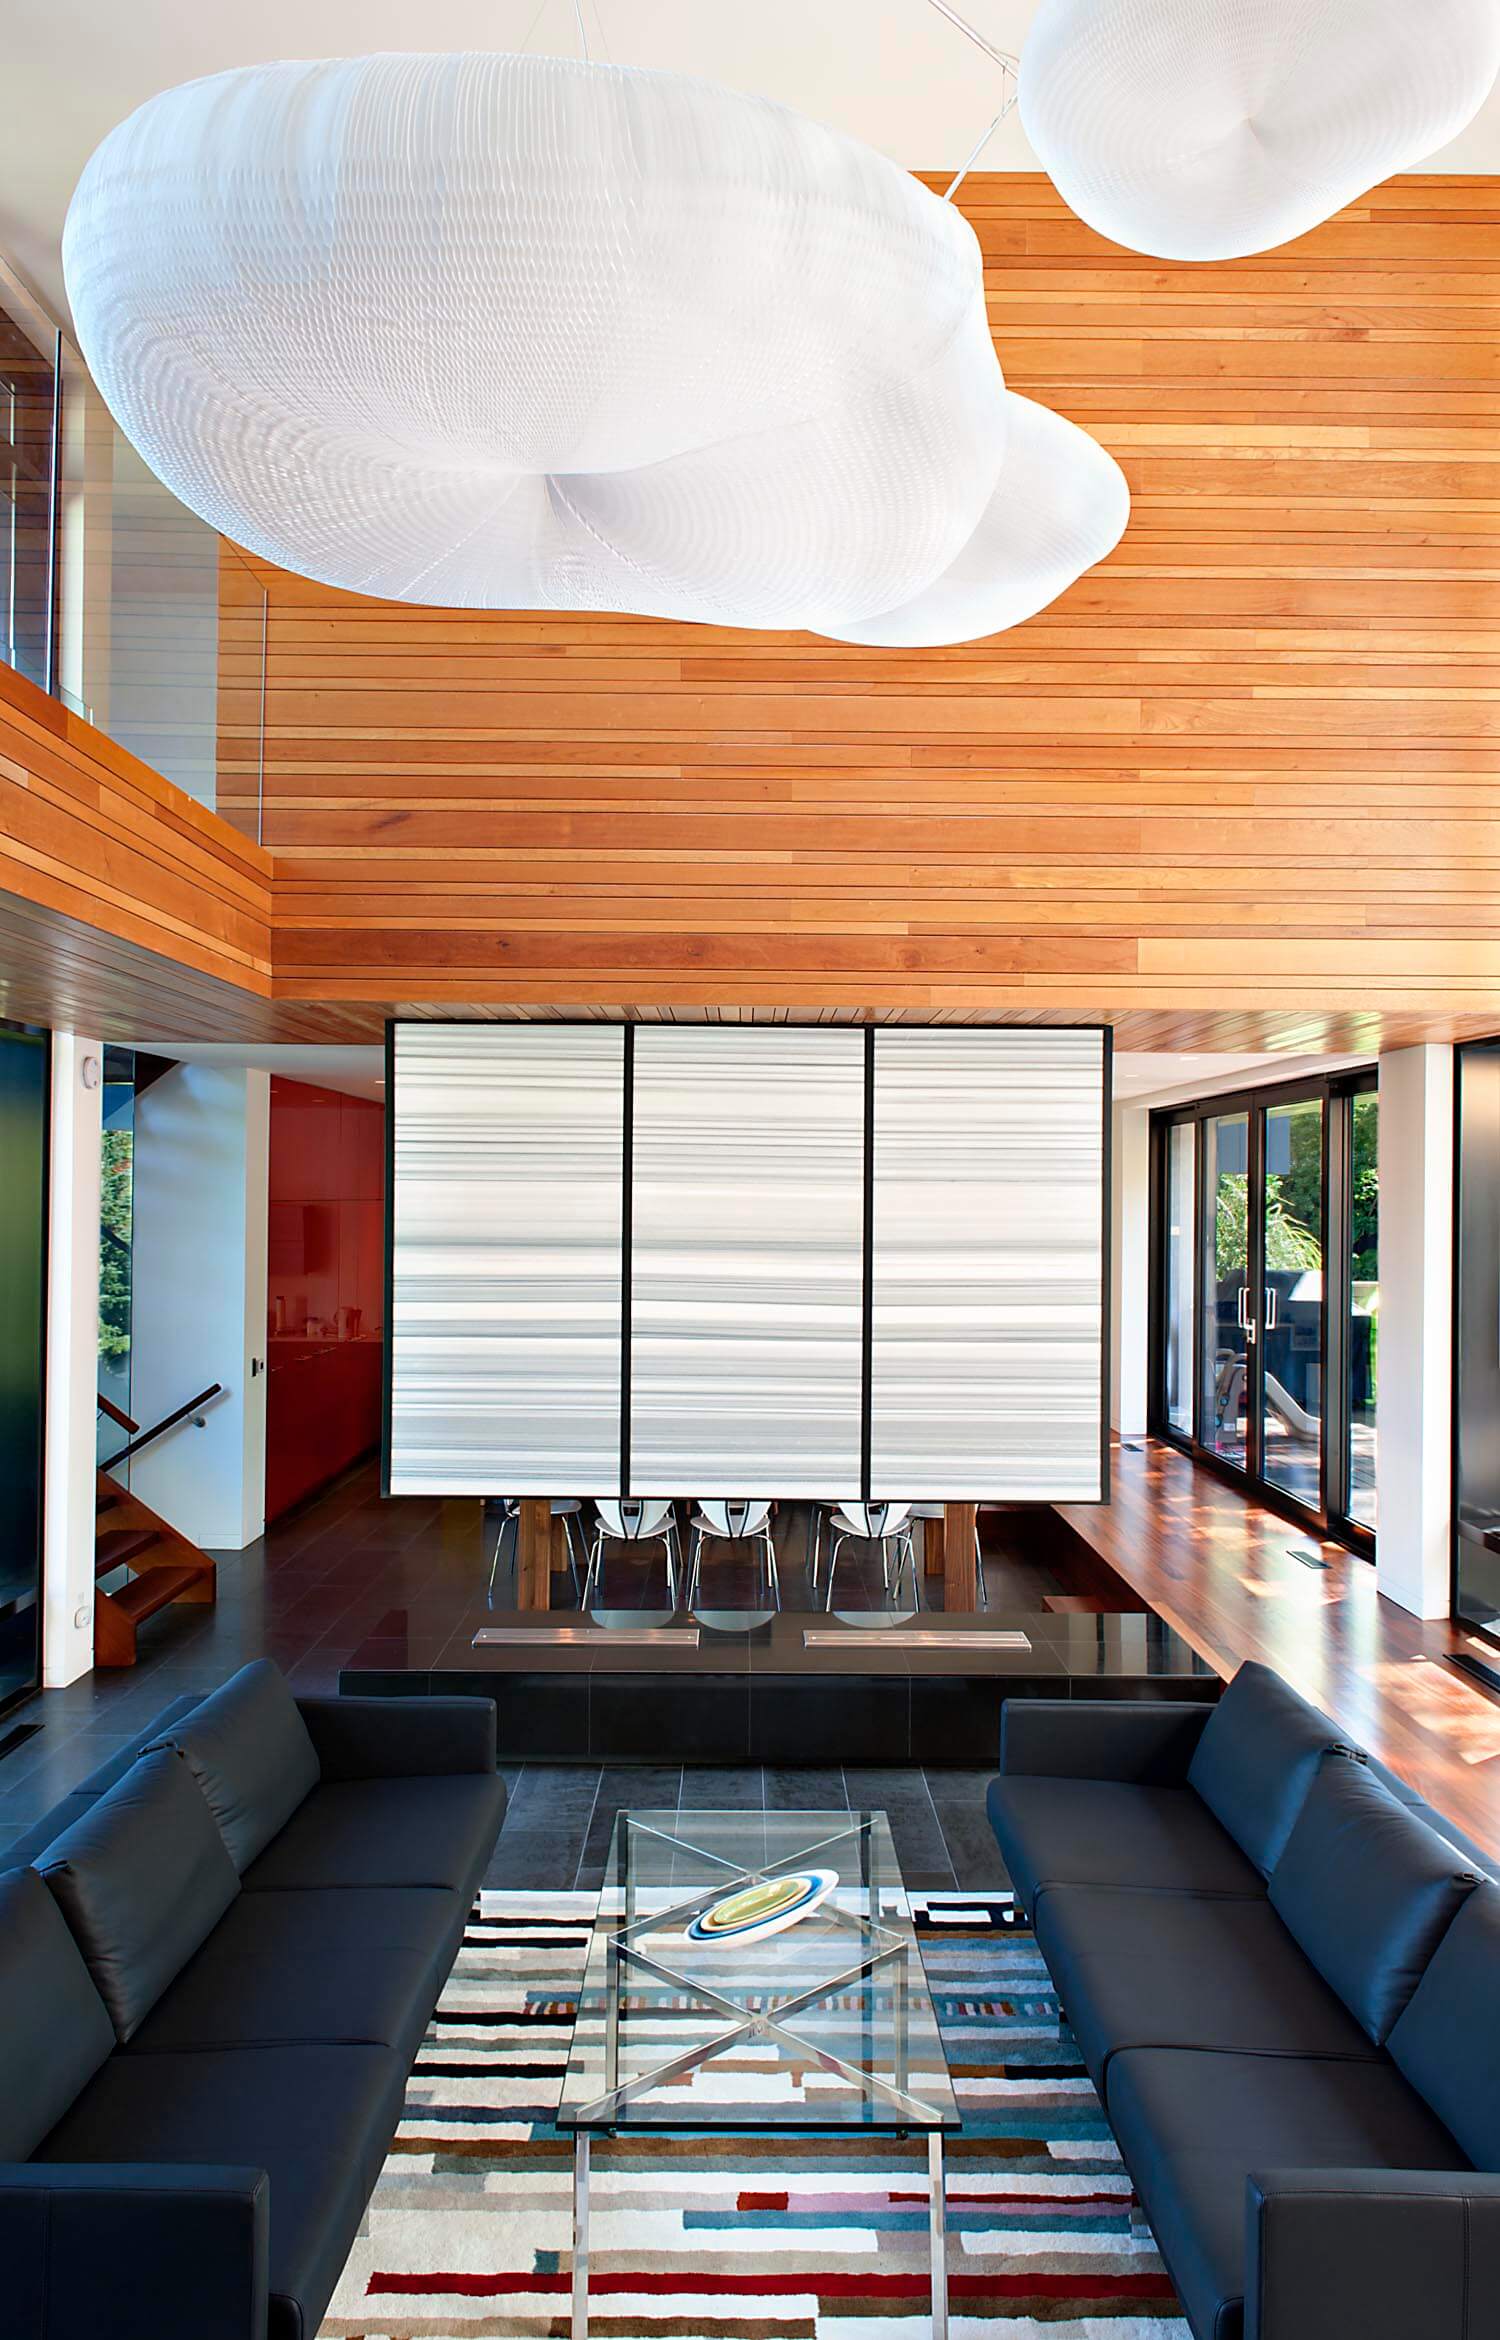 可以直接看到座位区:低矮的皮革沙发与玻璃和抛光的金属咖啡桌相接，白色的分隔墙将用餐空间分隔开来。